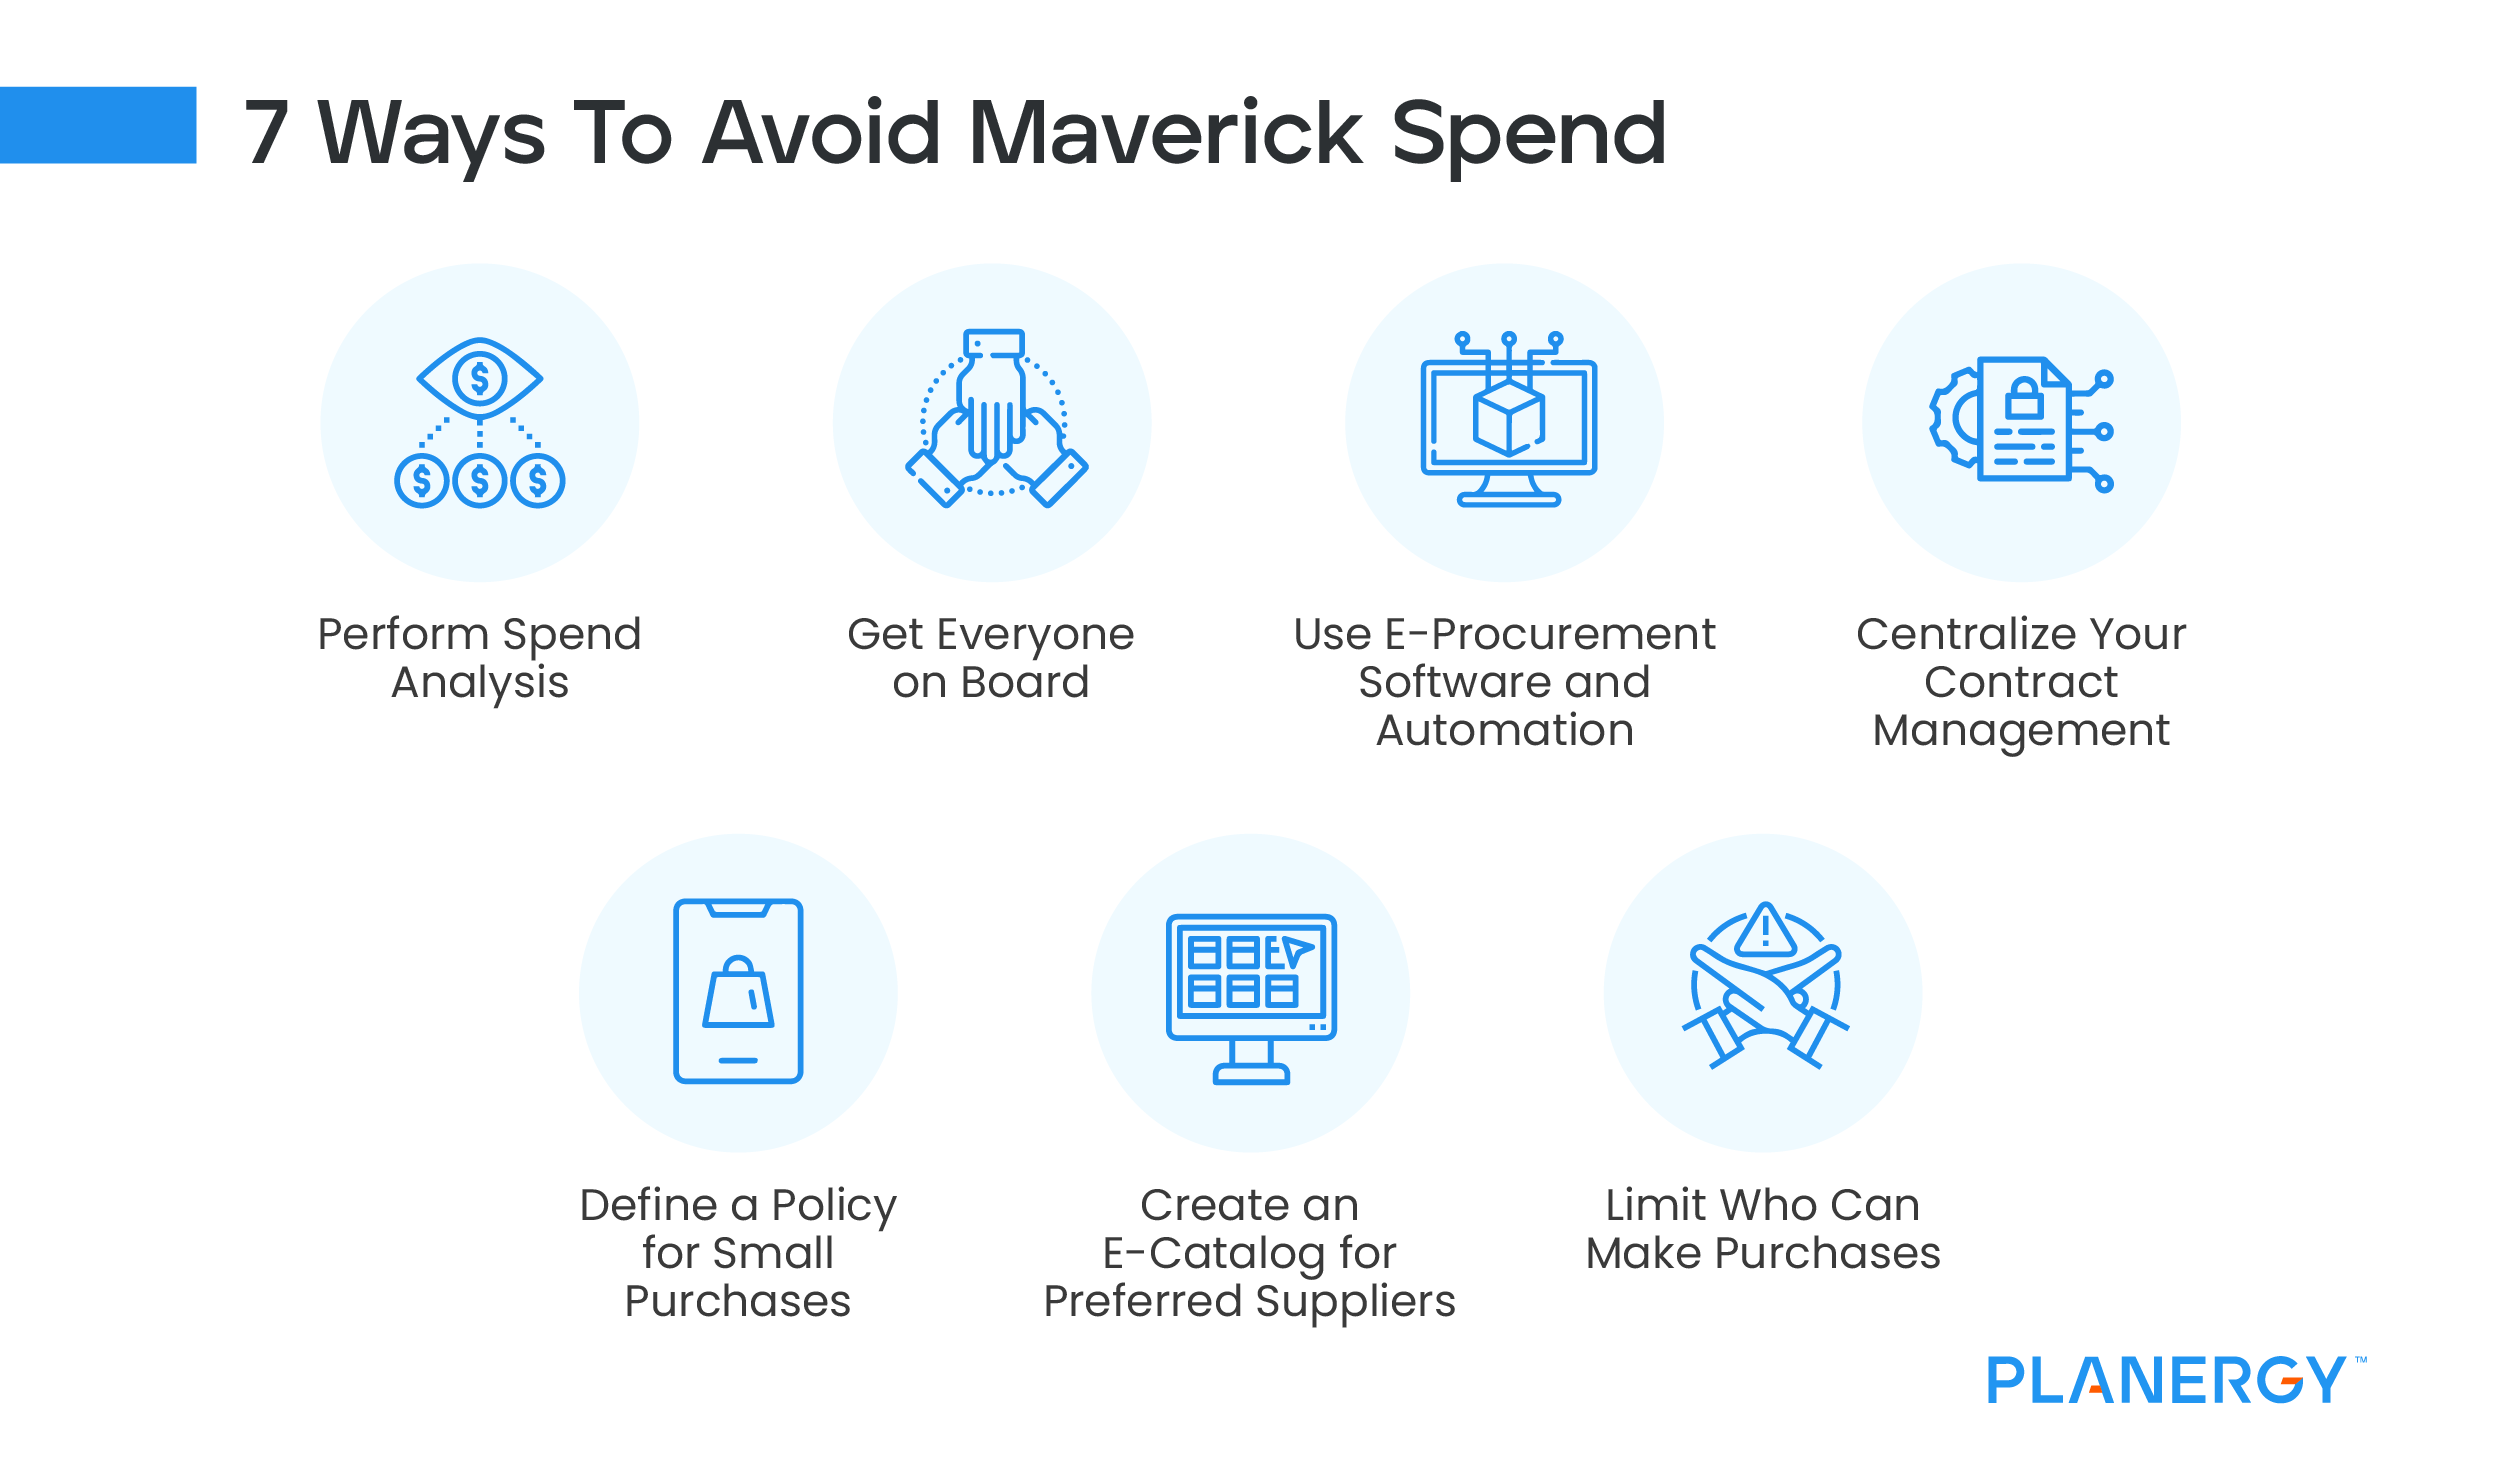 7 Ways to Avoid Maverick Spend